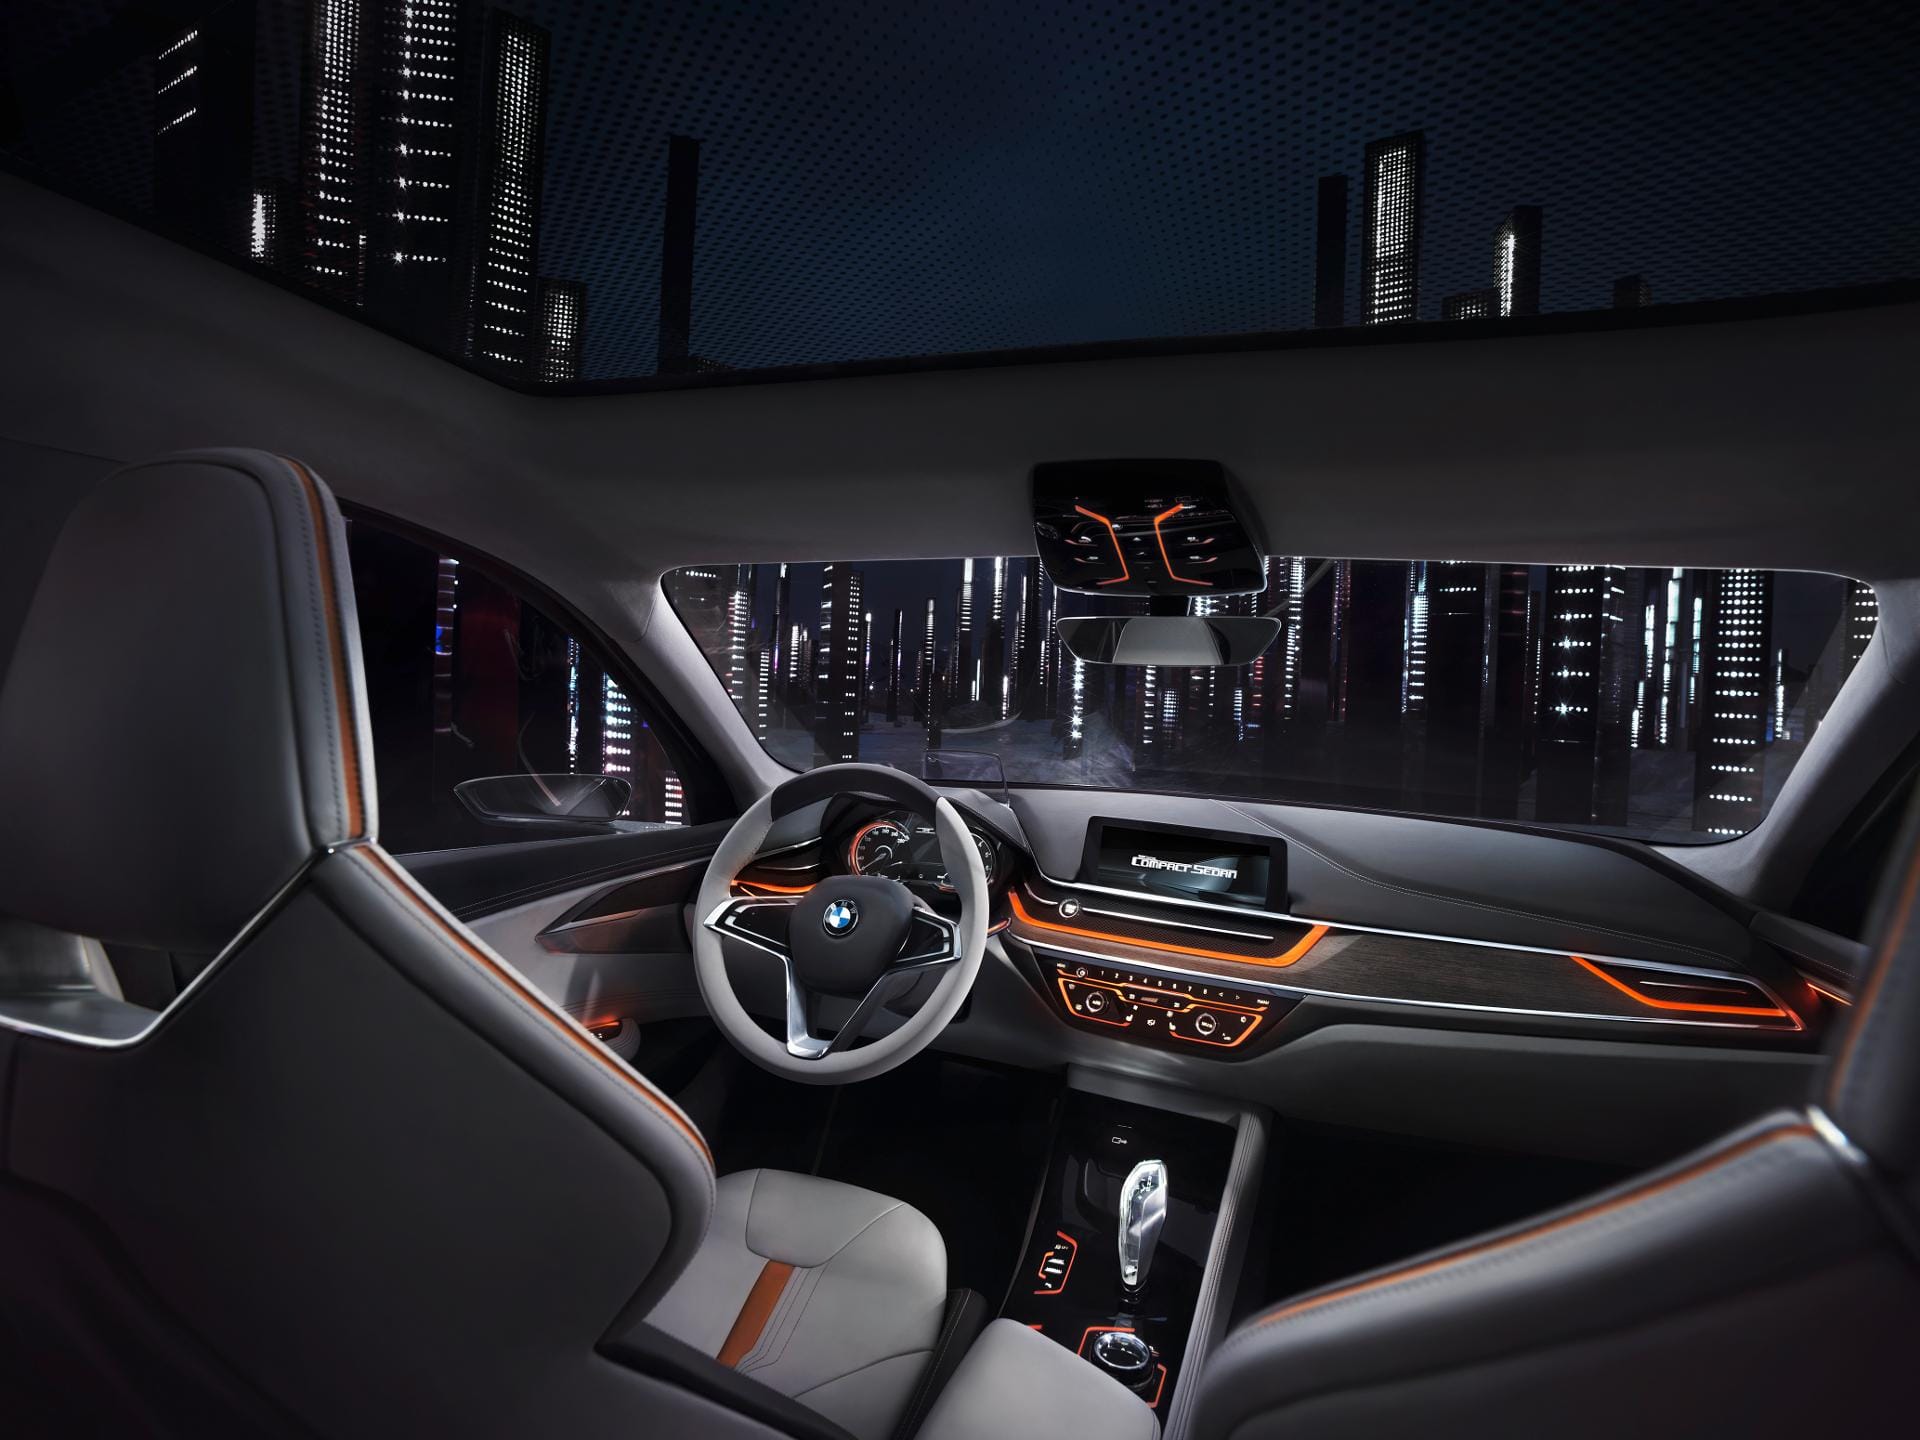 Blick in den BMW-Innenraum der Zukunft: Fast alles wird über berührungssensitive Oberflächen geregelt.